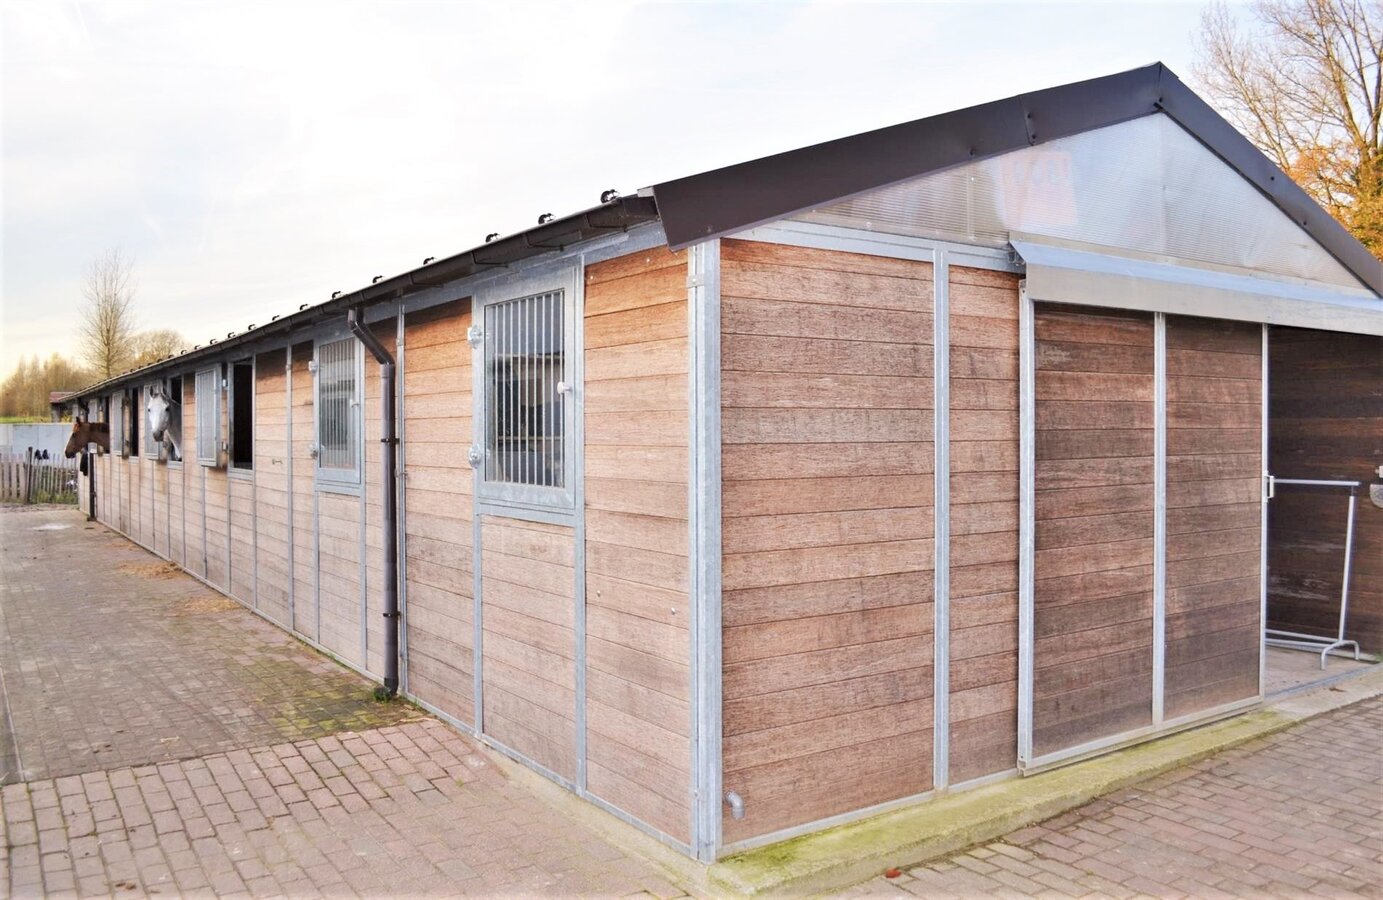 OPTIE - Habitation avec complexe &#233;questre sur environ 4ha &#224; Lennik (Brabant Flamand) 